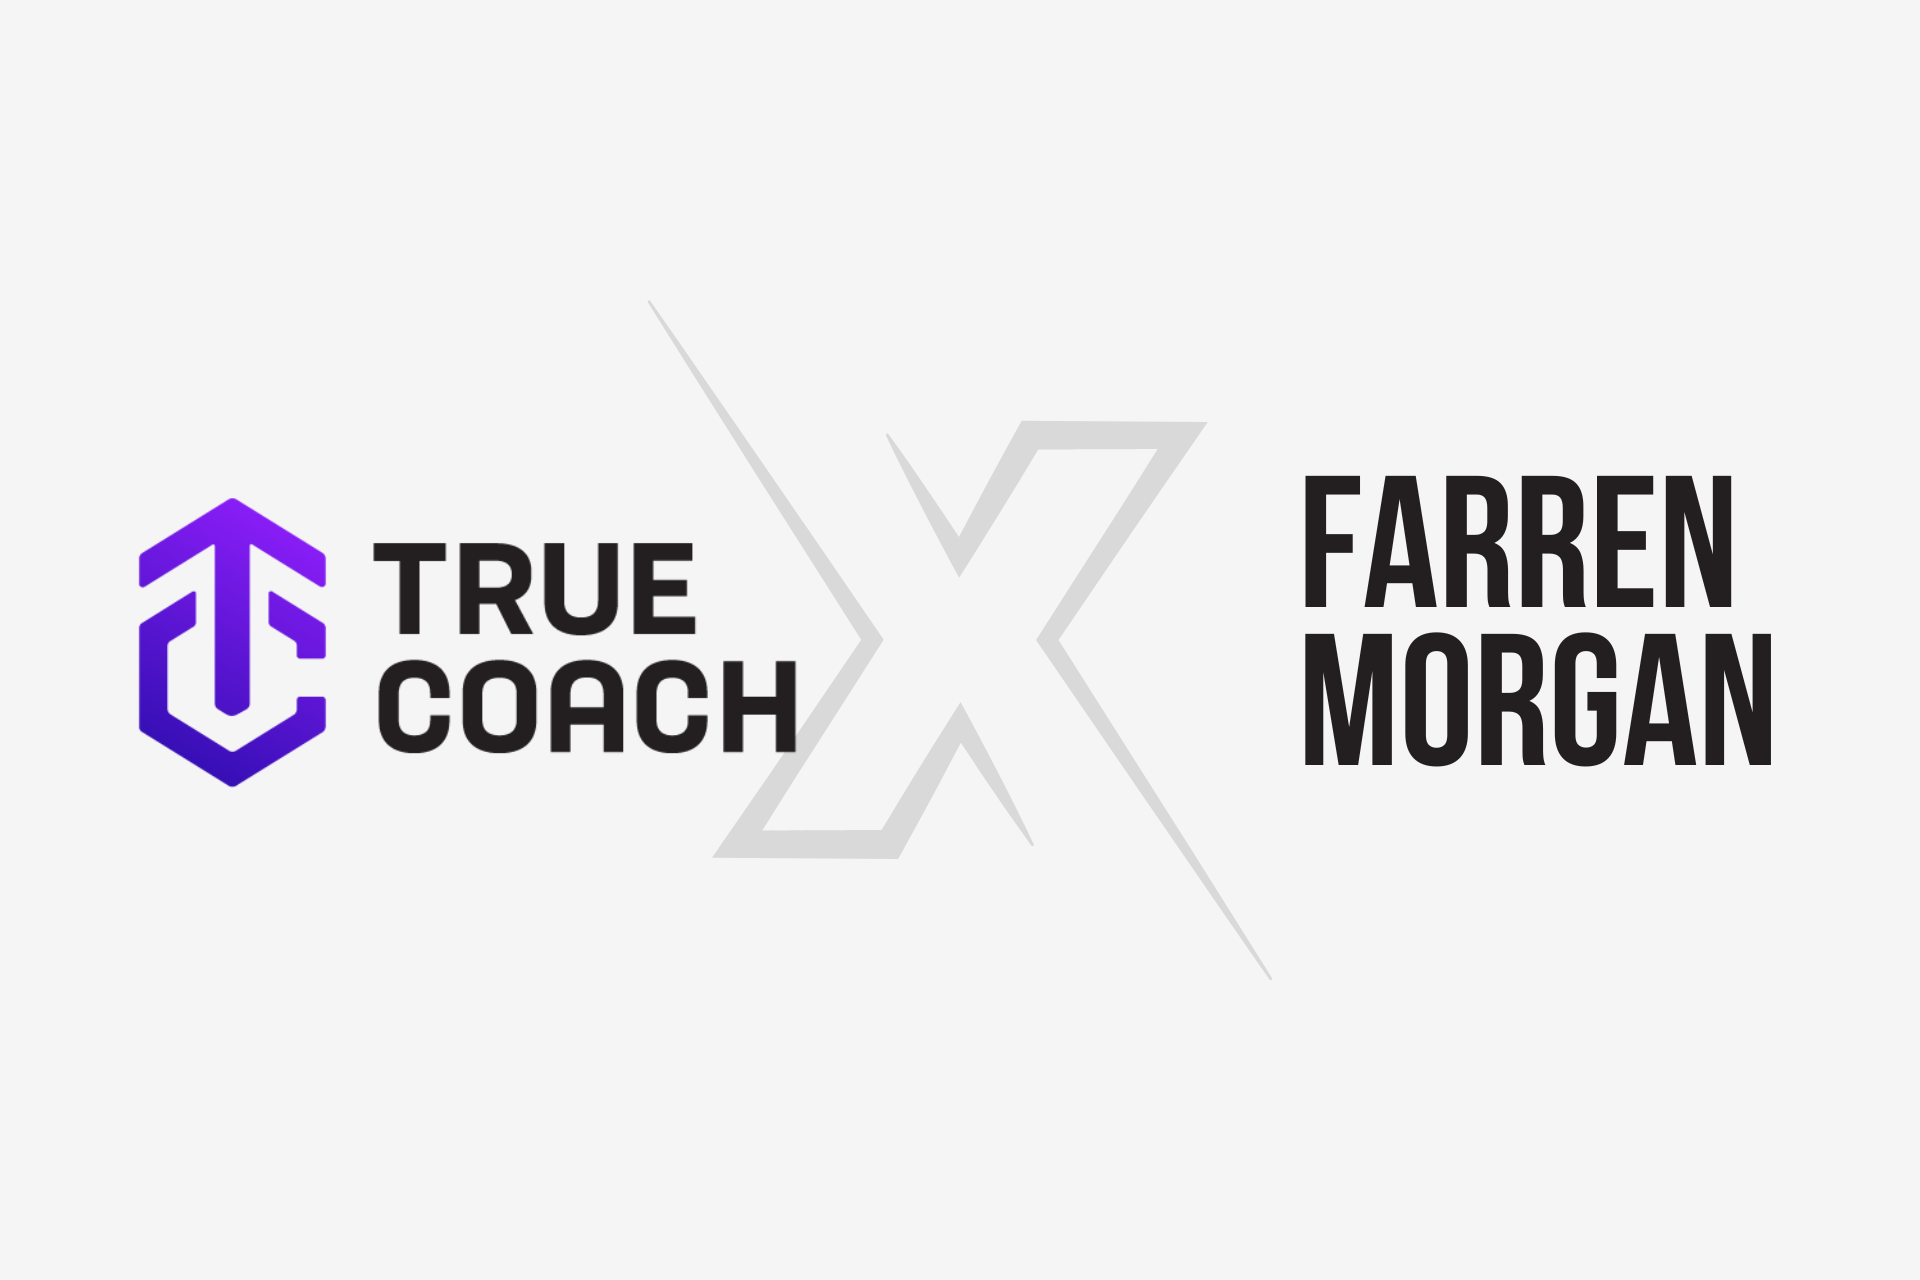 Farren Morgan and True Coach App